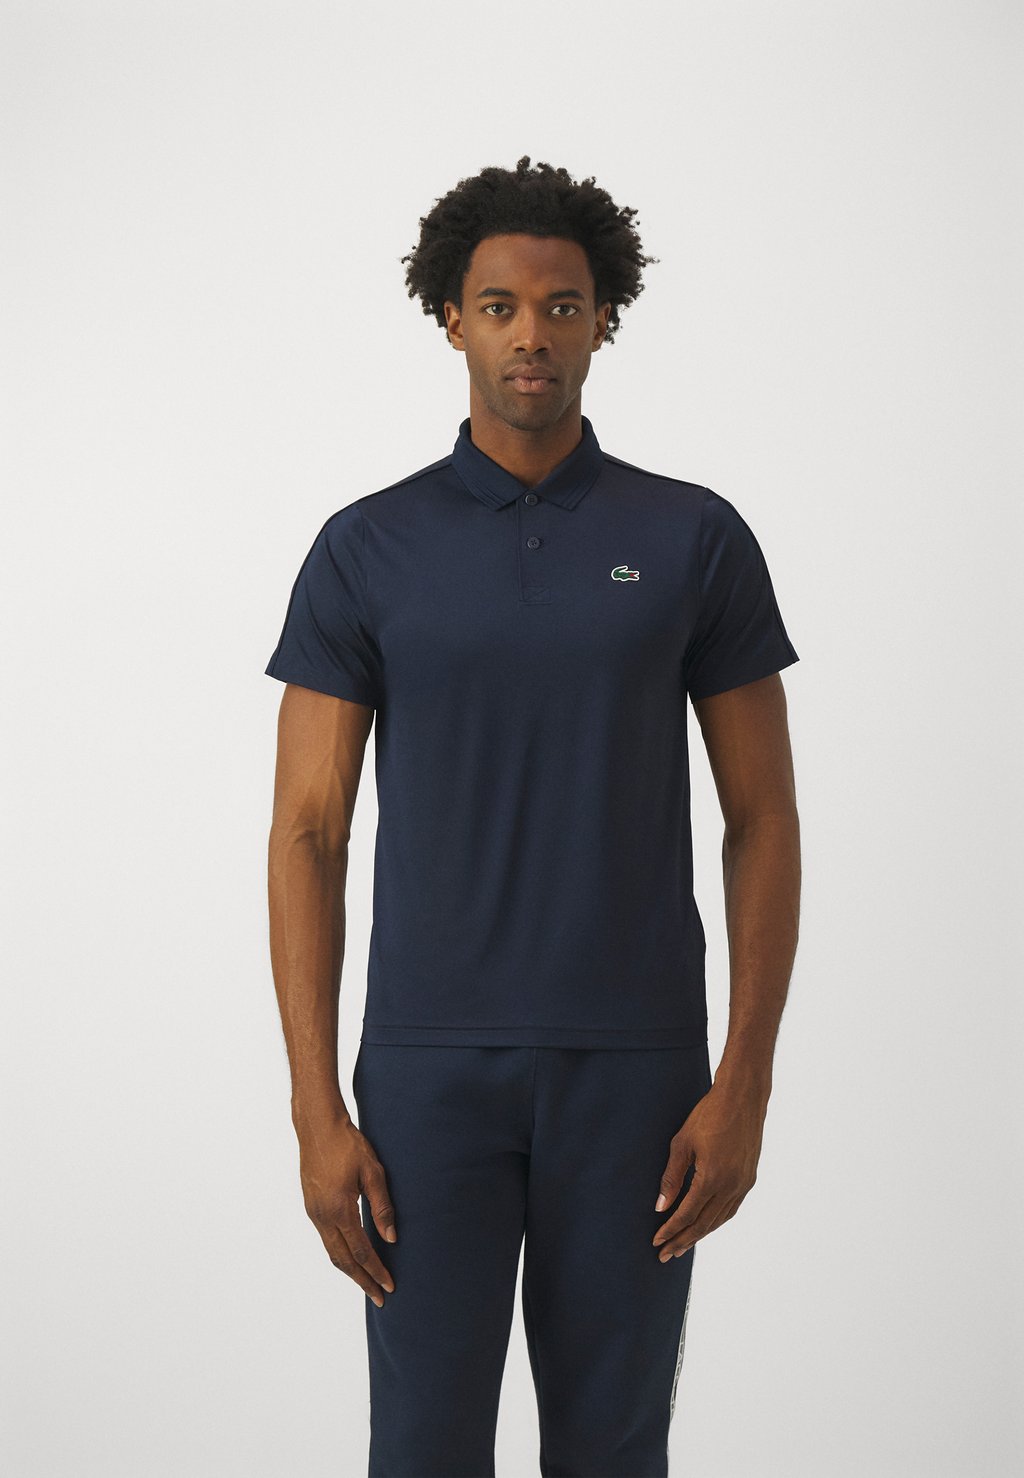 Рубашка-поло Tennis Heritage Lacoste, цвет navy blue шорты lacoste sport lined tennis shorts цвет navy blue